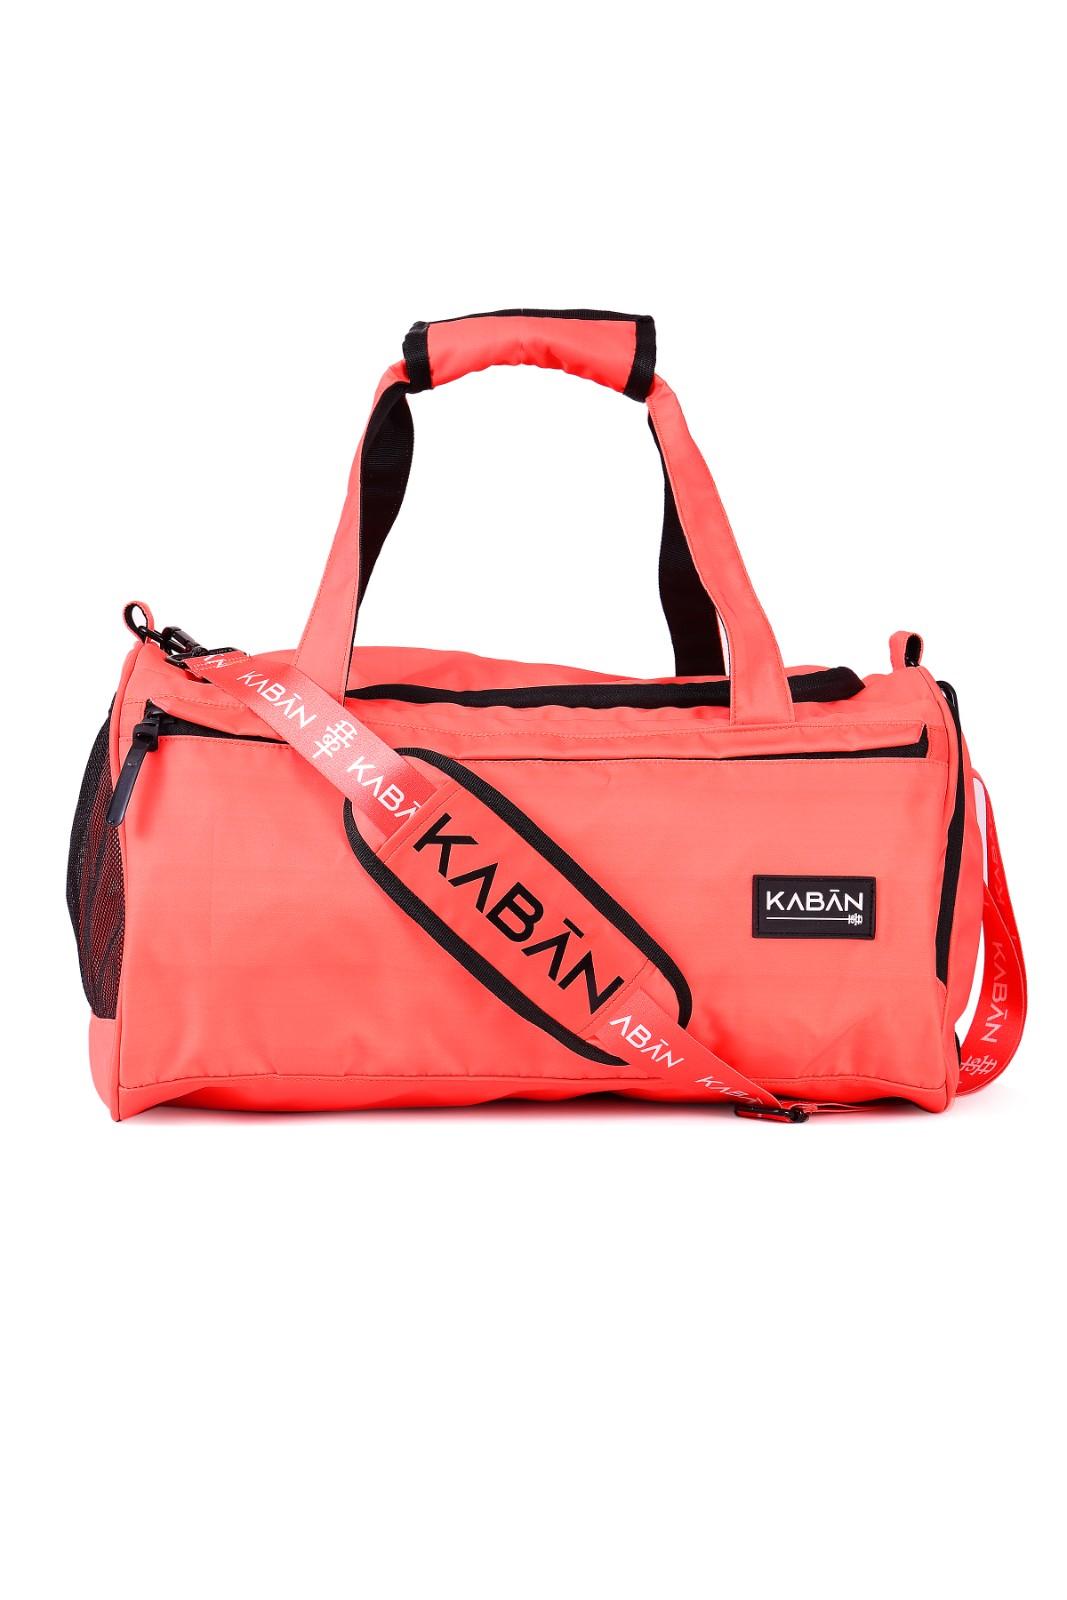    	 Coral Crush Orange Water-Resistant Duffle bag Gym bag